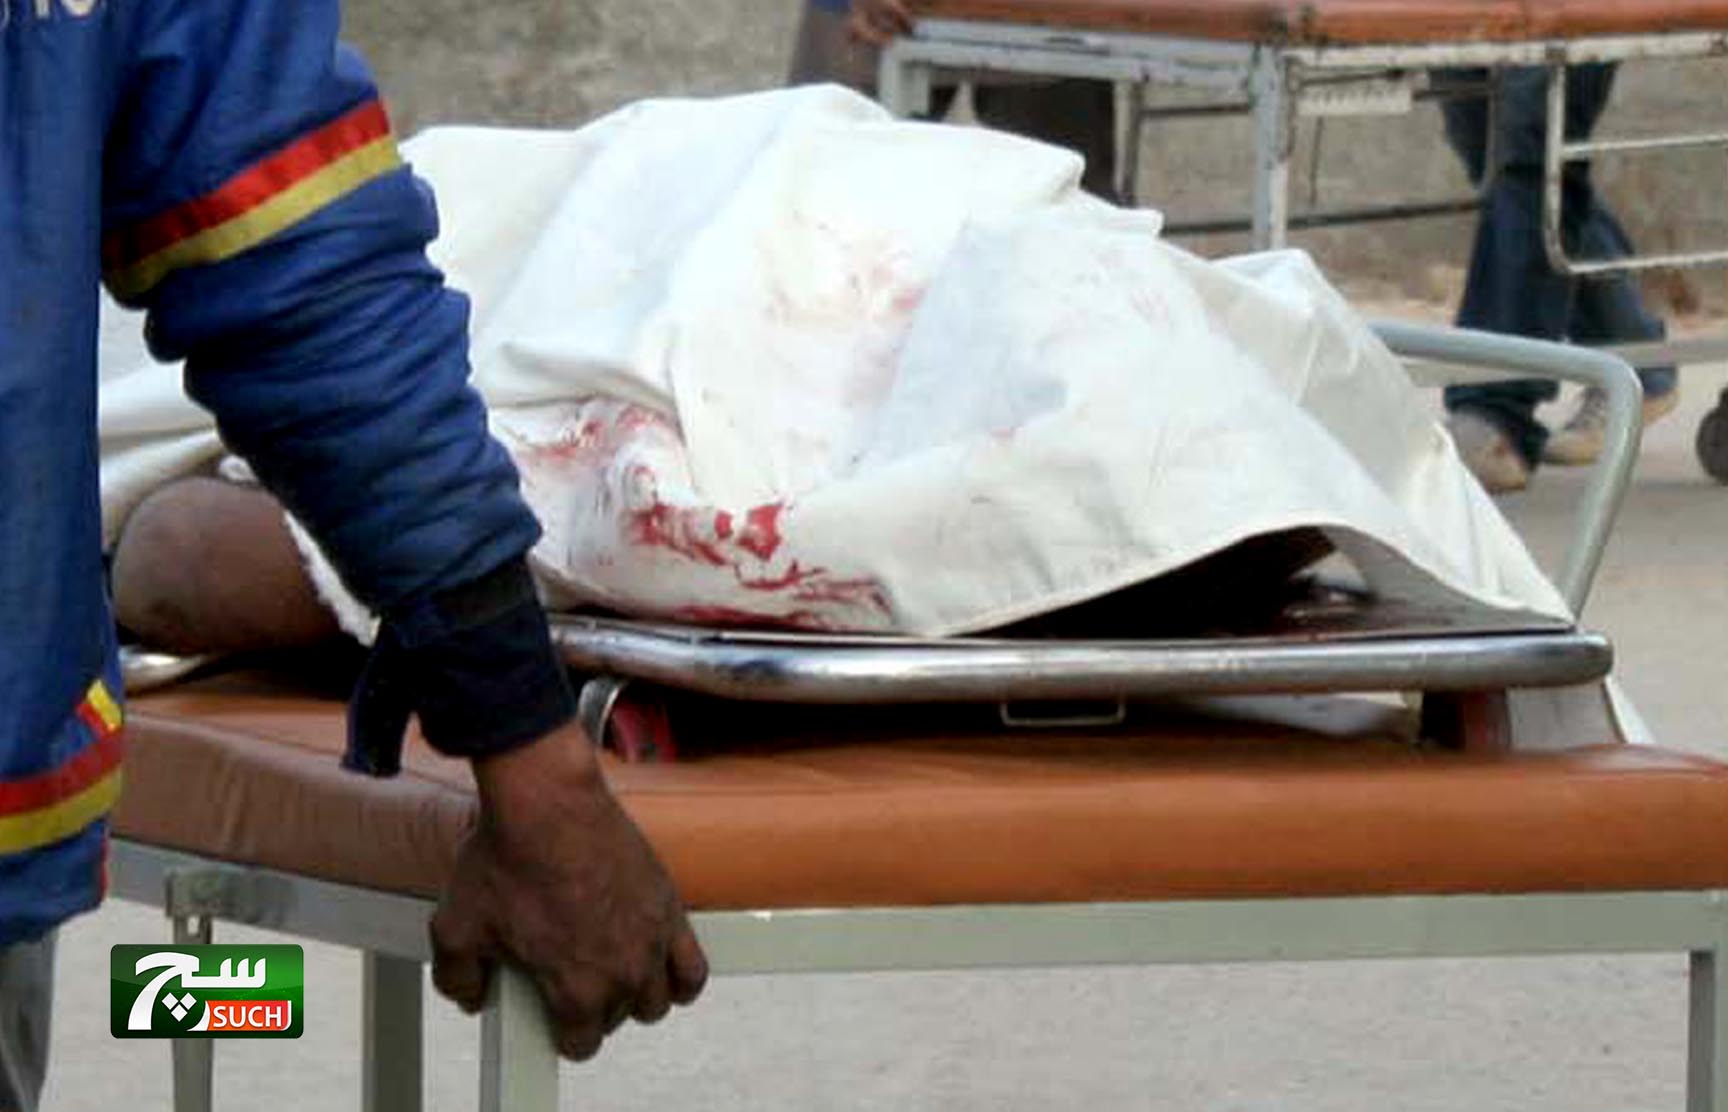  العثور على خمسة جثث لأشخاص تم قلتهم برمي الرصاص جنوب غربي باكستان